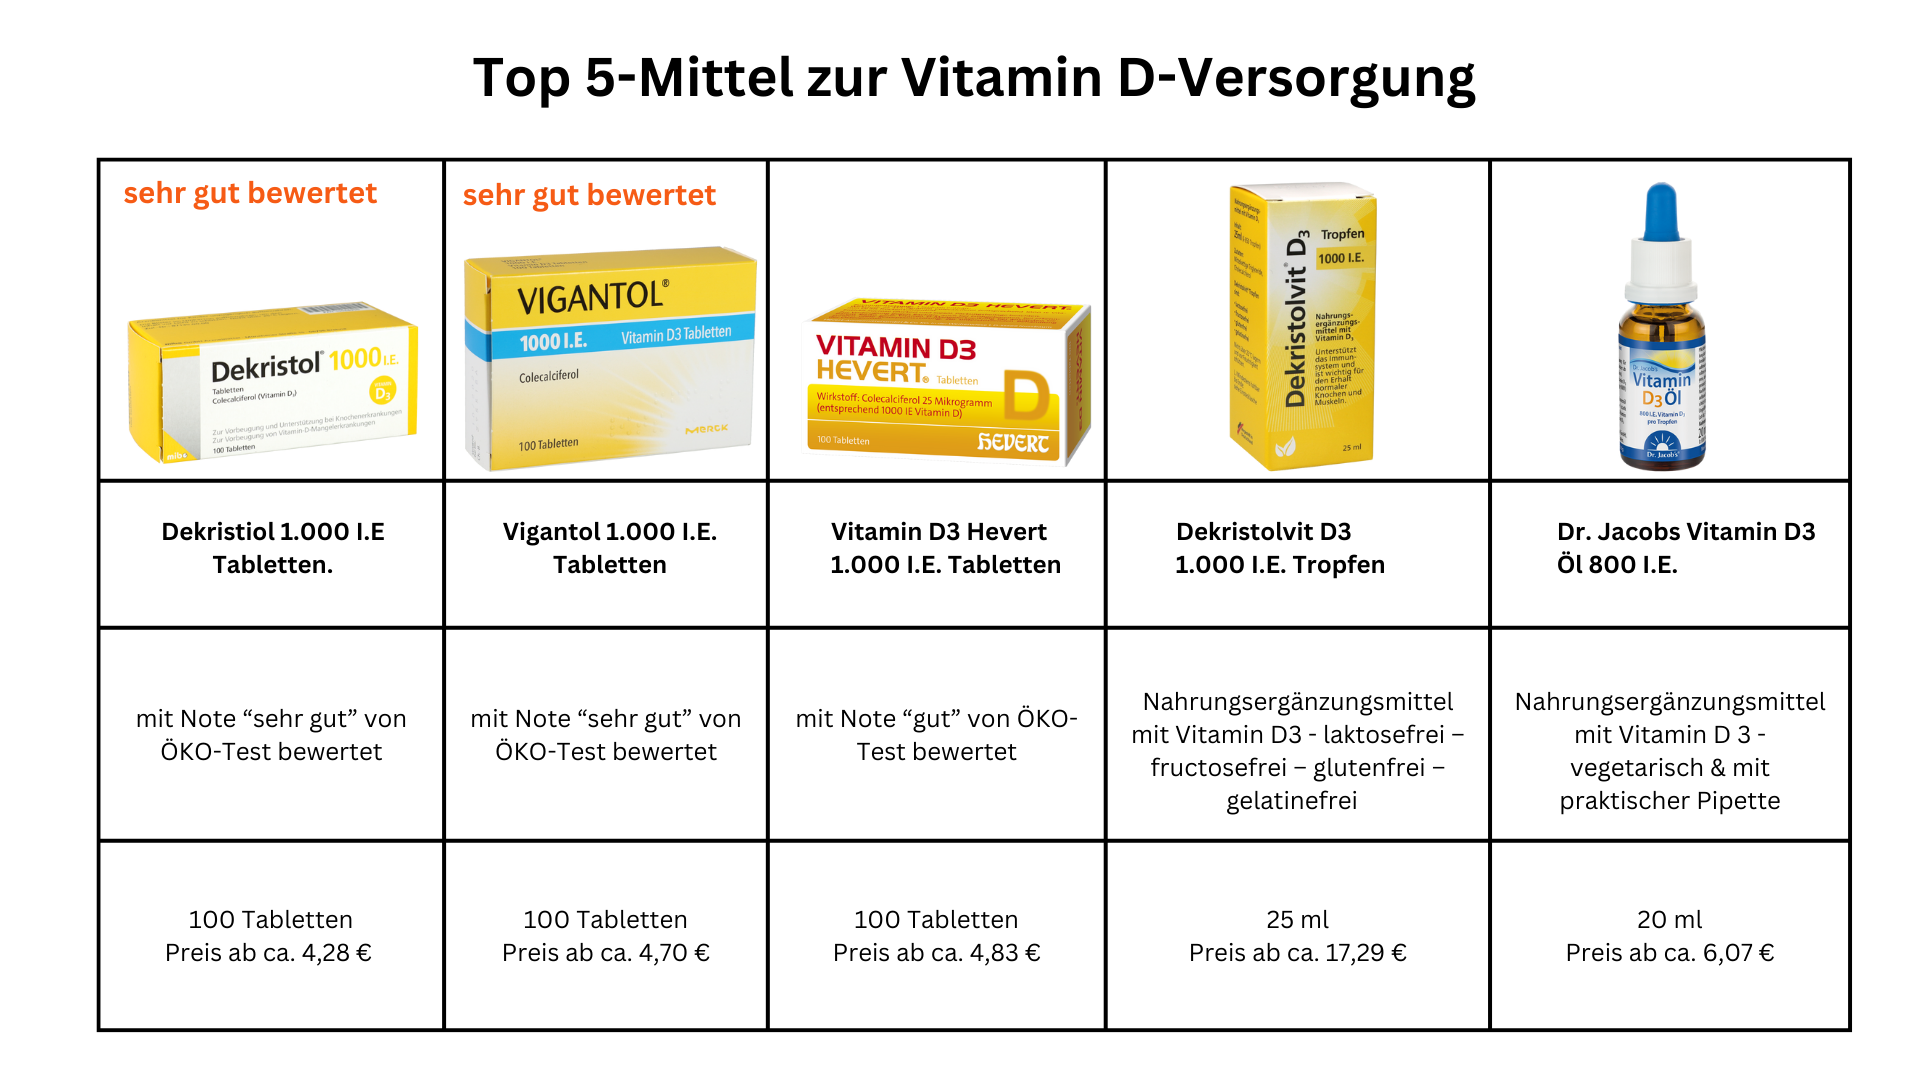 Top5 Mittel zur Vitamin D-Versorgung Übersicht